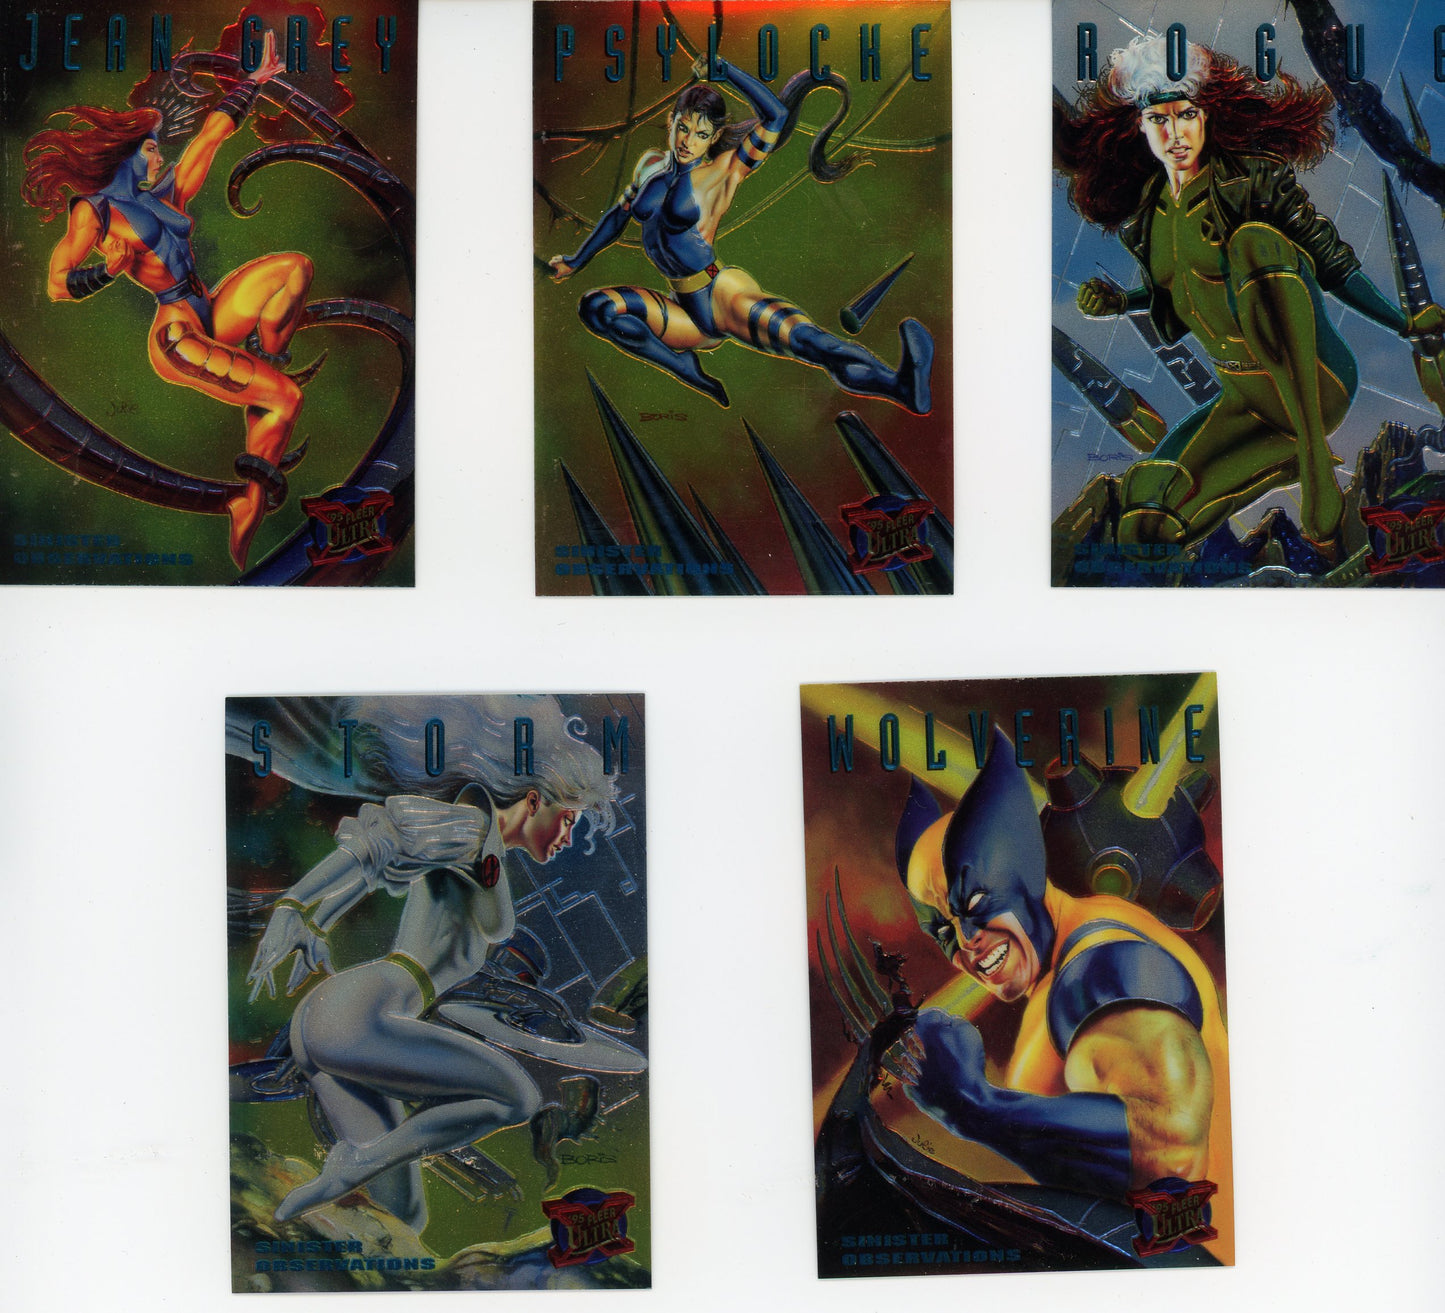 1995 Fleer Marvel Sinister Observations (10 Card Set)